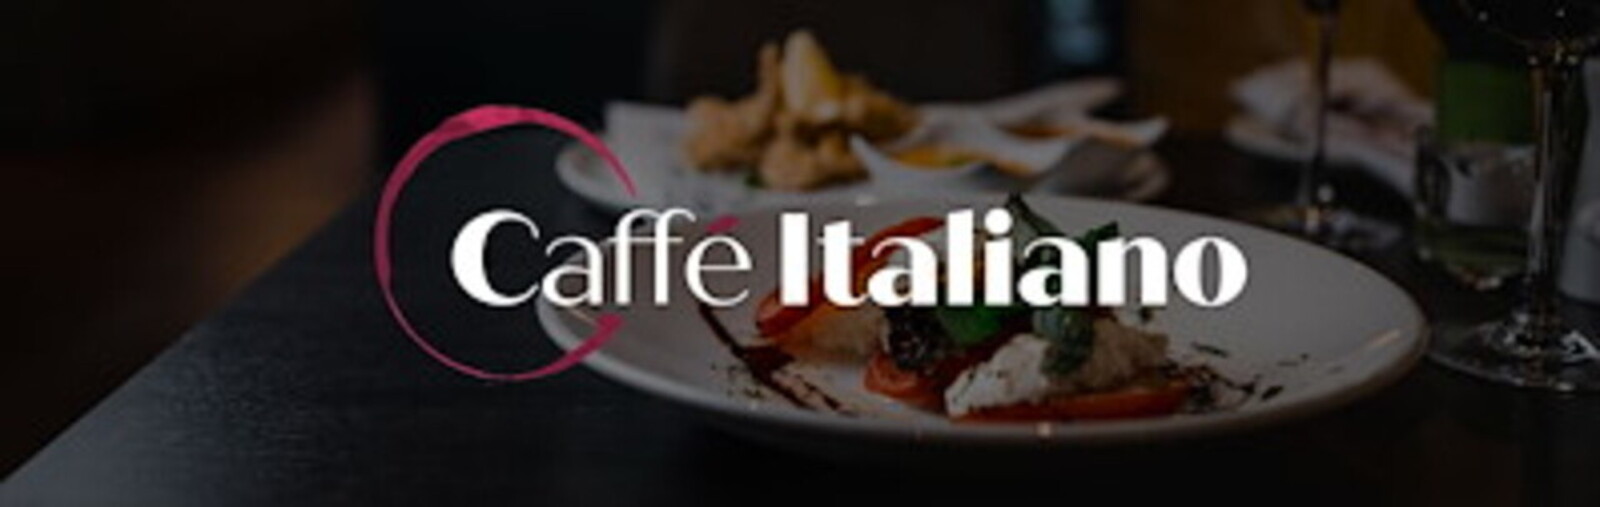 Caffé Italiano logo